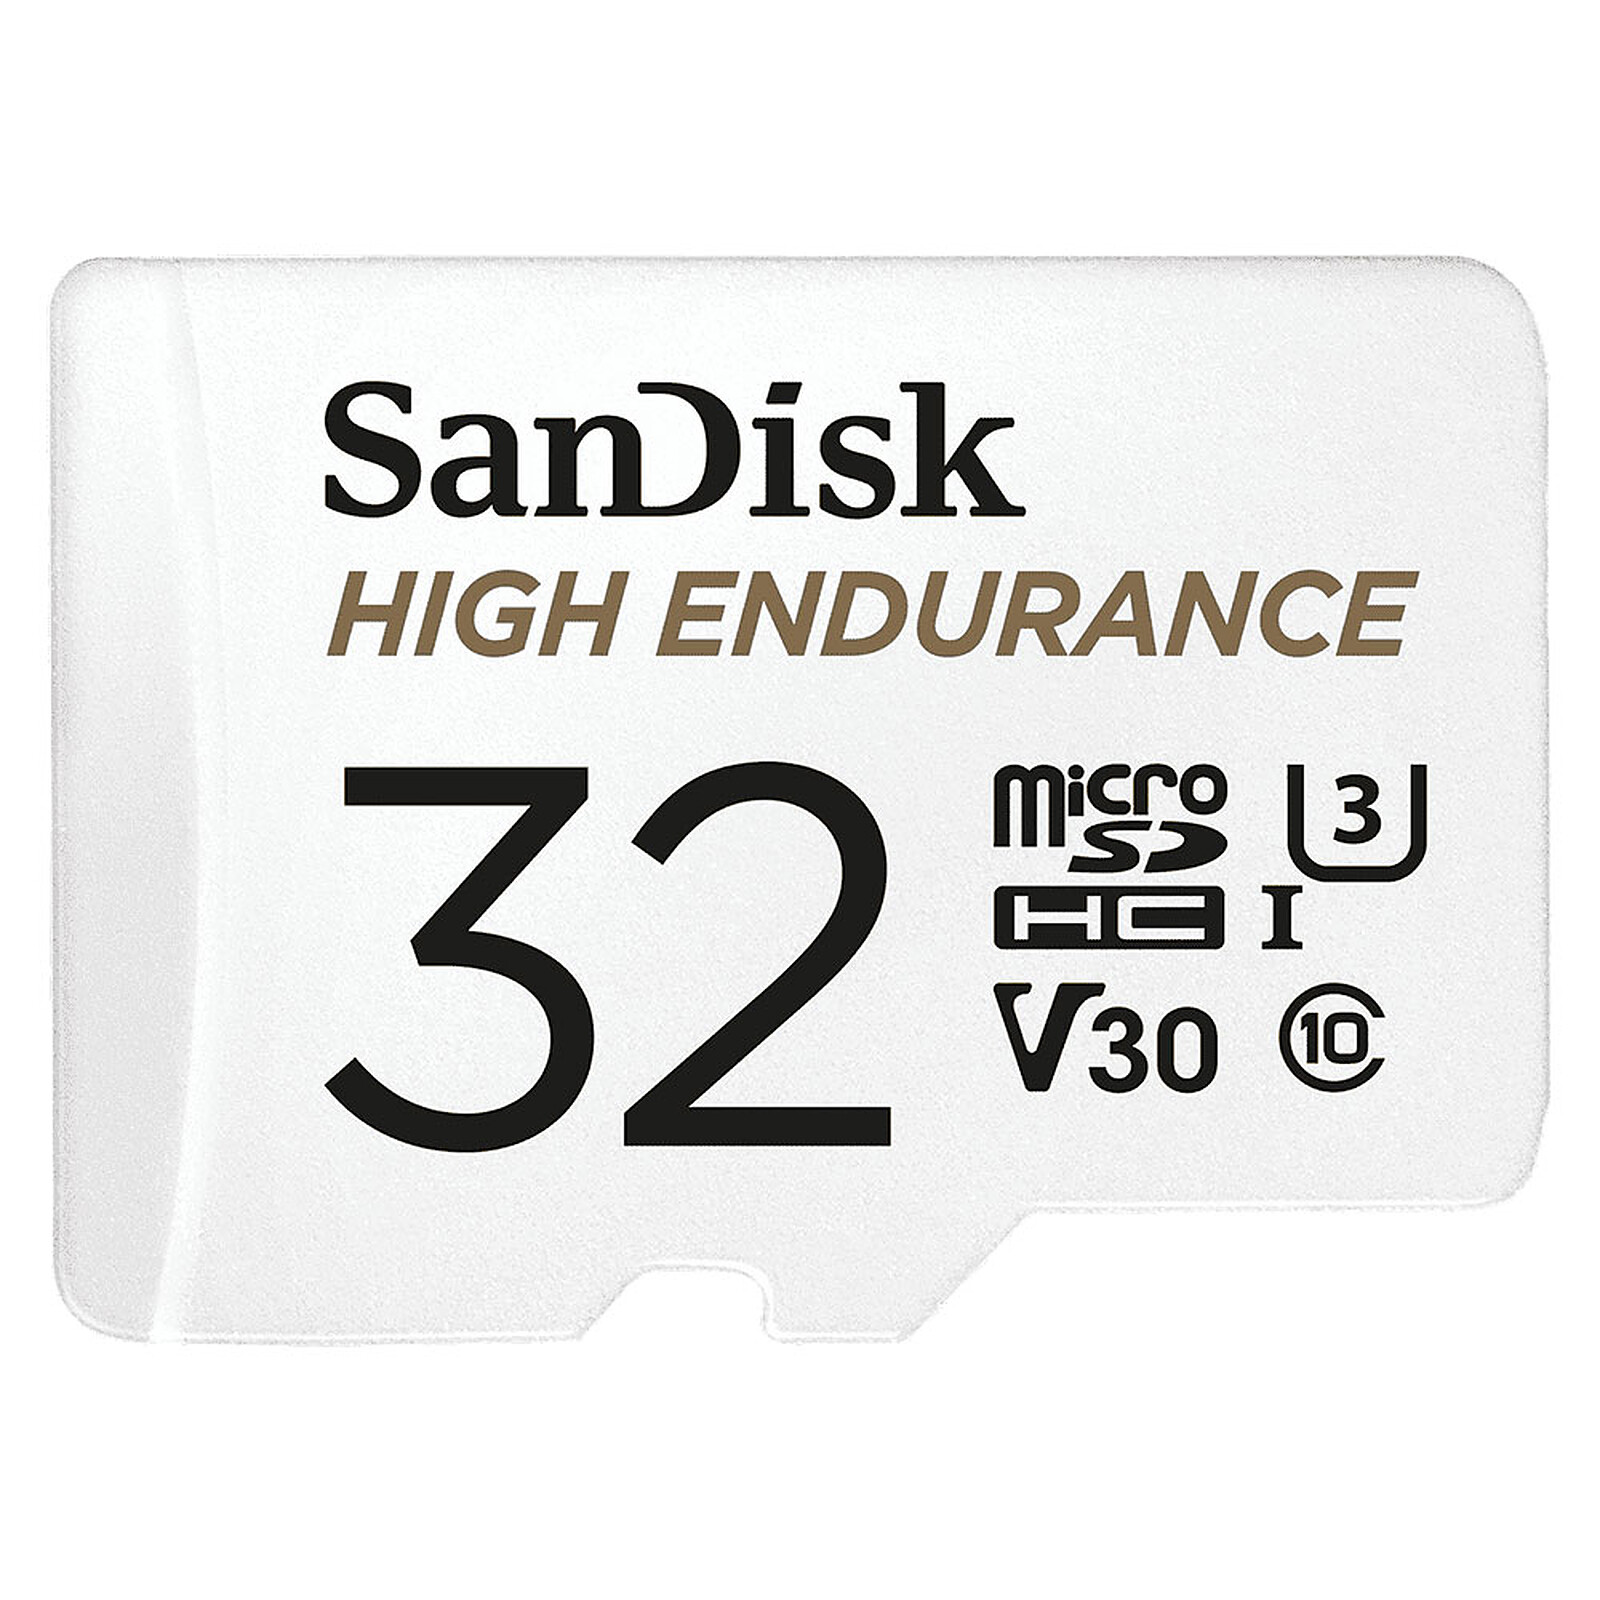 SanDisk Ultra microSDXC 64 Go + adaptateur SD - Carte mémoire - Garantie 3  ans LDLC